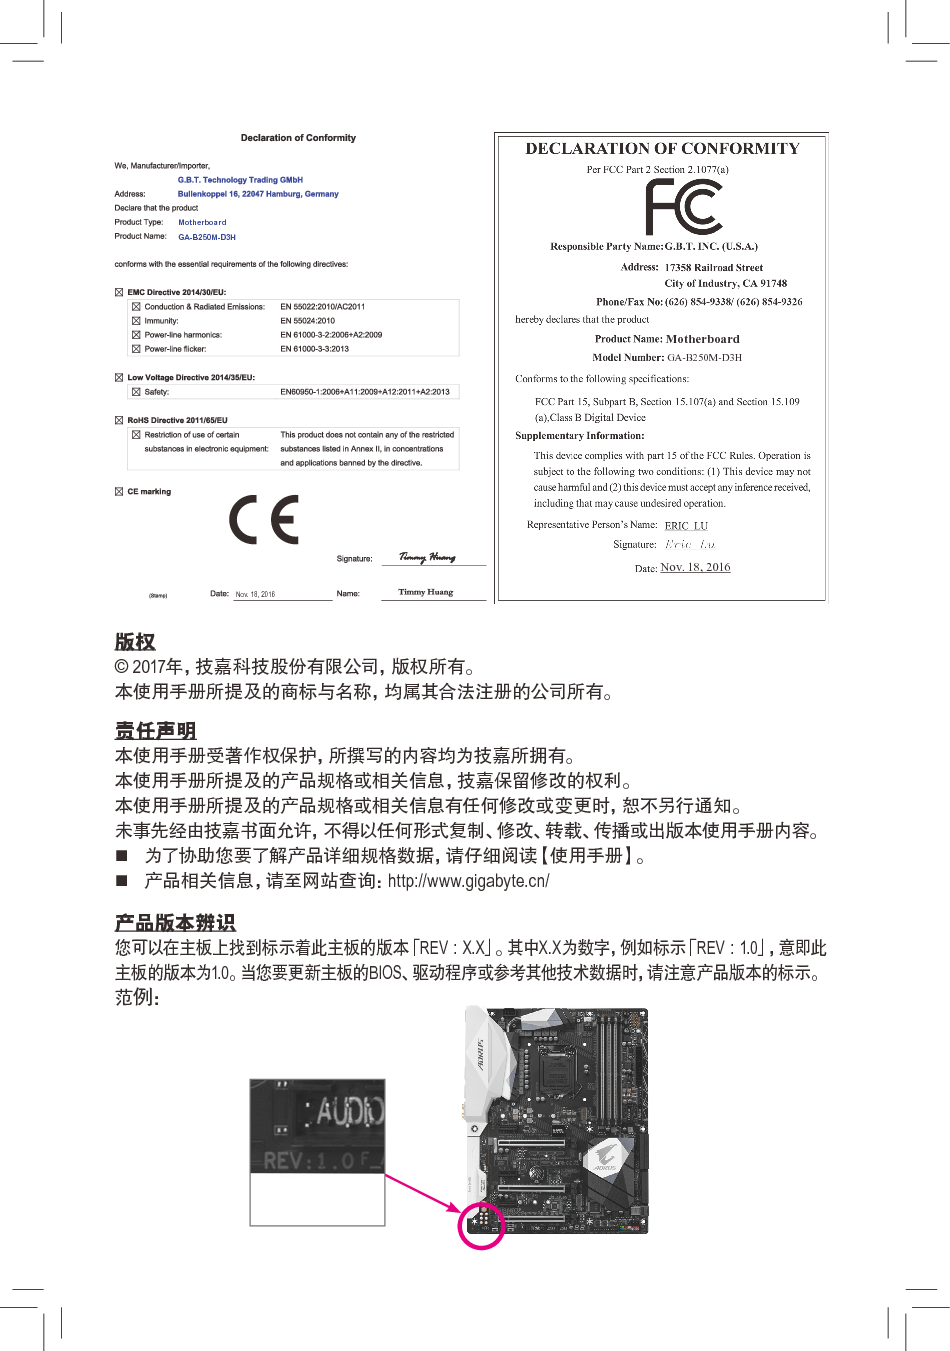 技嘉 Gigabyte GA-B250M-D3H 使用手册 第1页